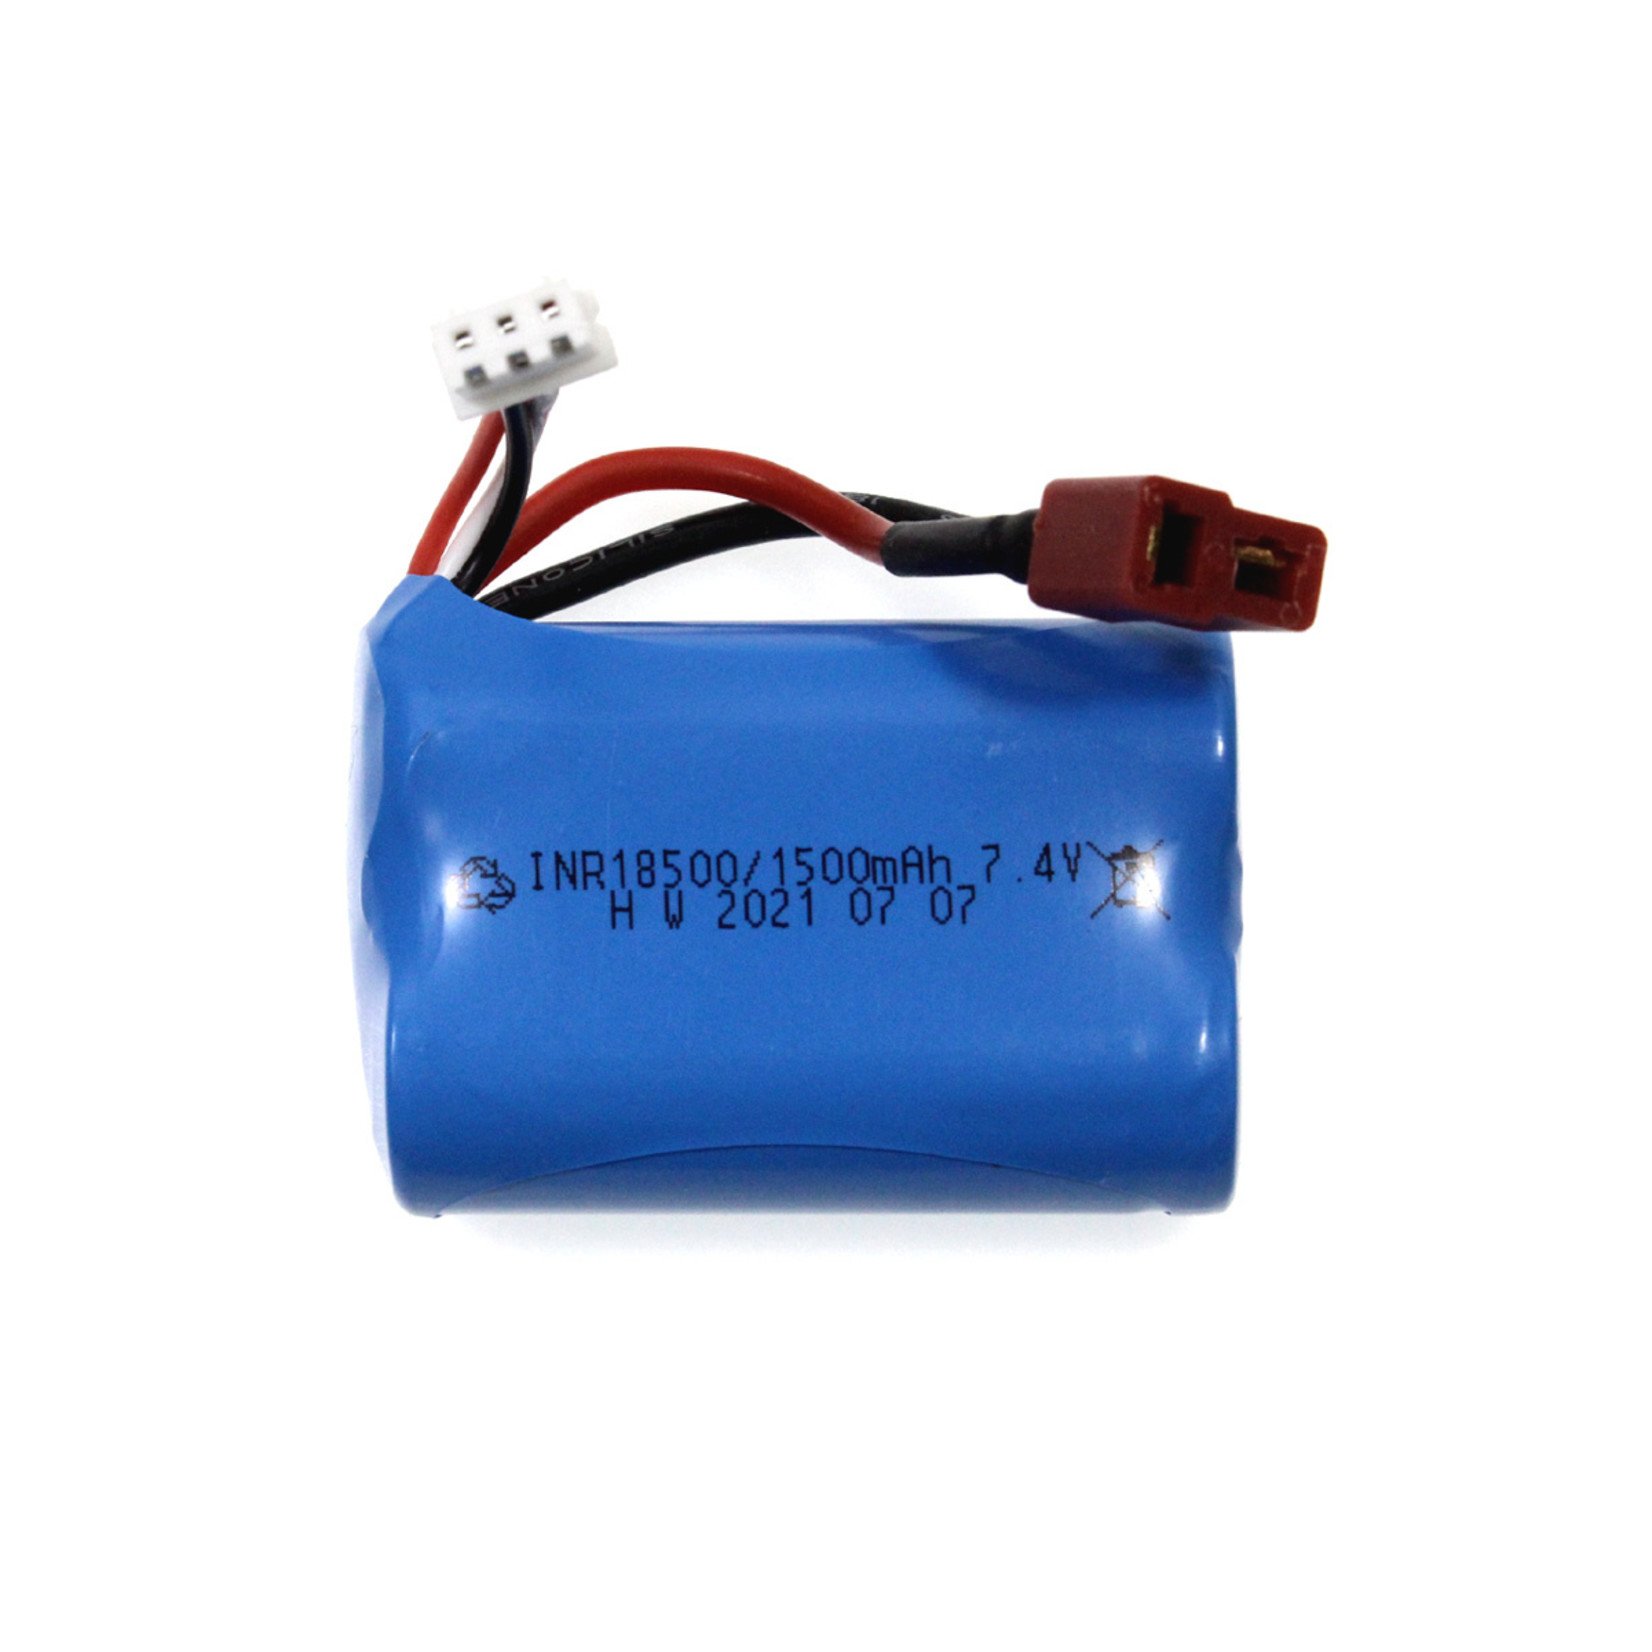 Racers Edge Li-Ion 7.4V 1500mAh Battery Pack (TYPE 18500) w/T-Plug for Blackzon Slyder